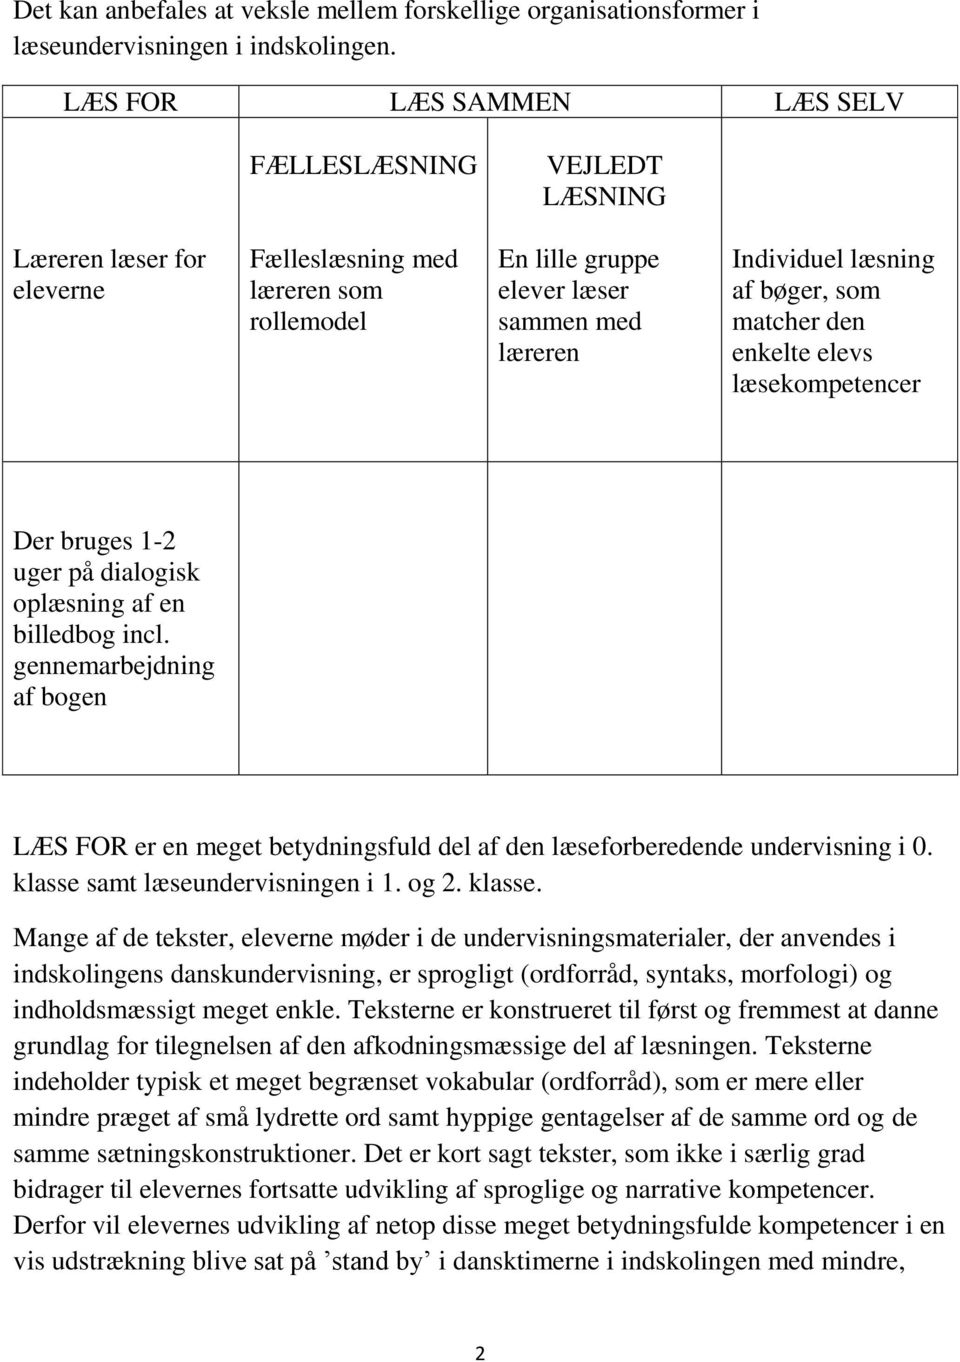 Dialogisk oplæsning. - en metode til LÆS FOR i indskolingen. Jette Løntoft  - PDF Free Download